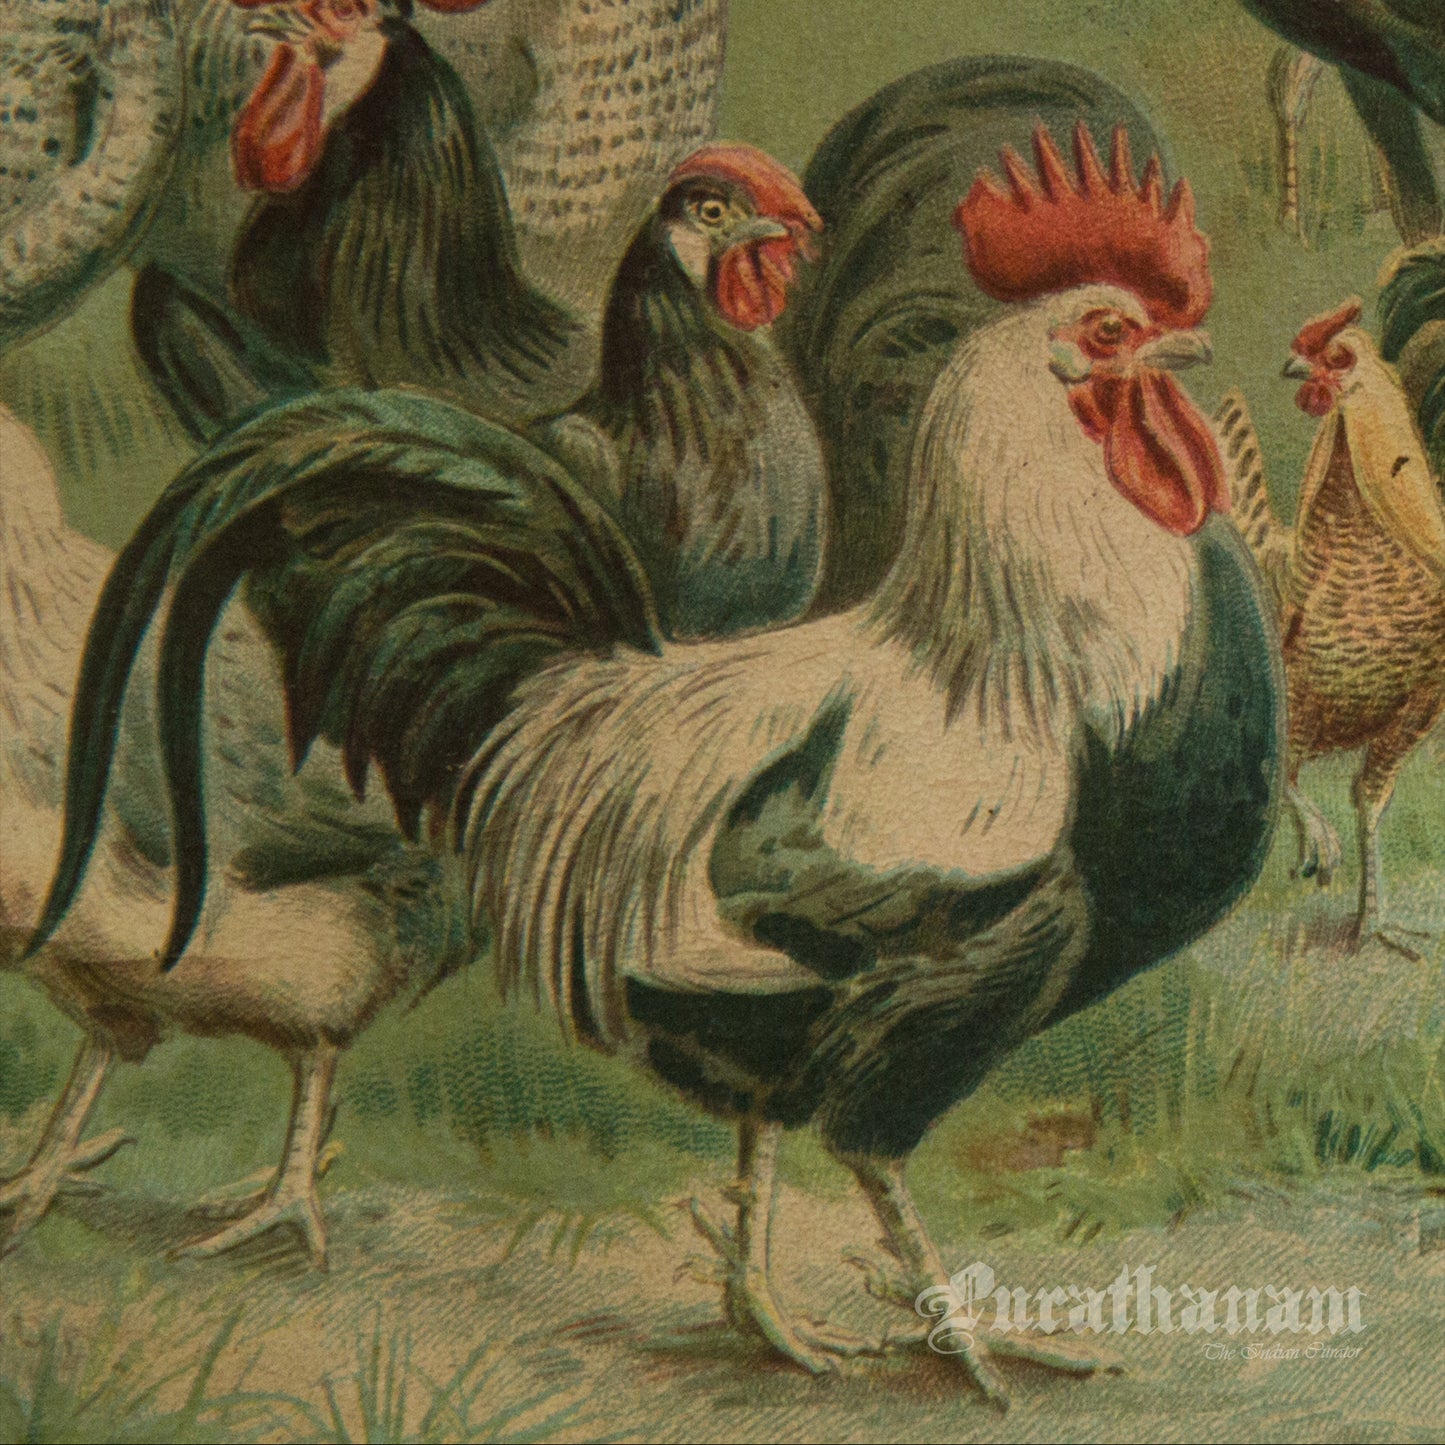 Hens & Cocks - Bird Art / Avian Art - Chromolithograph Print